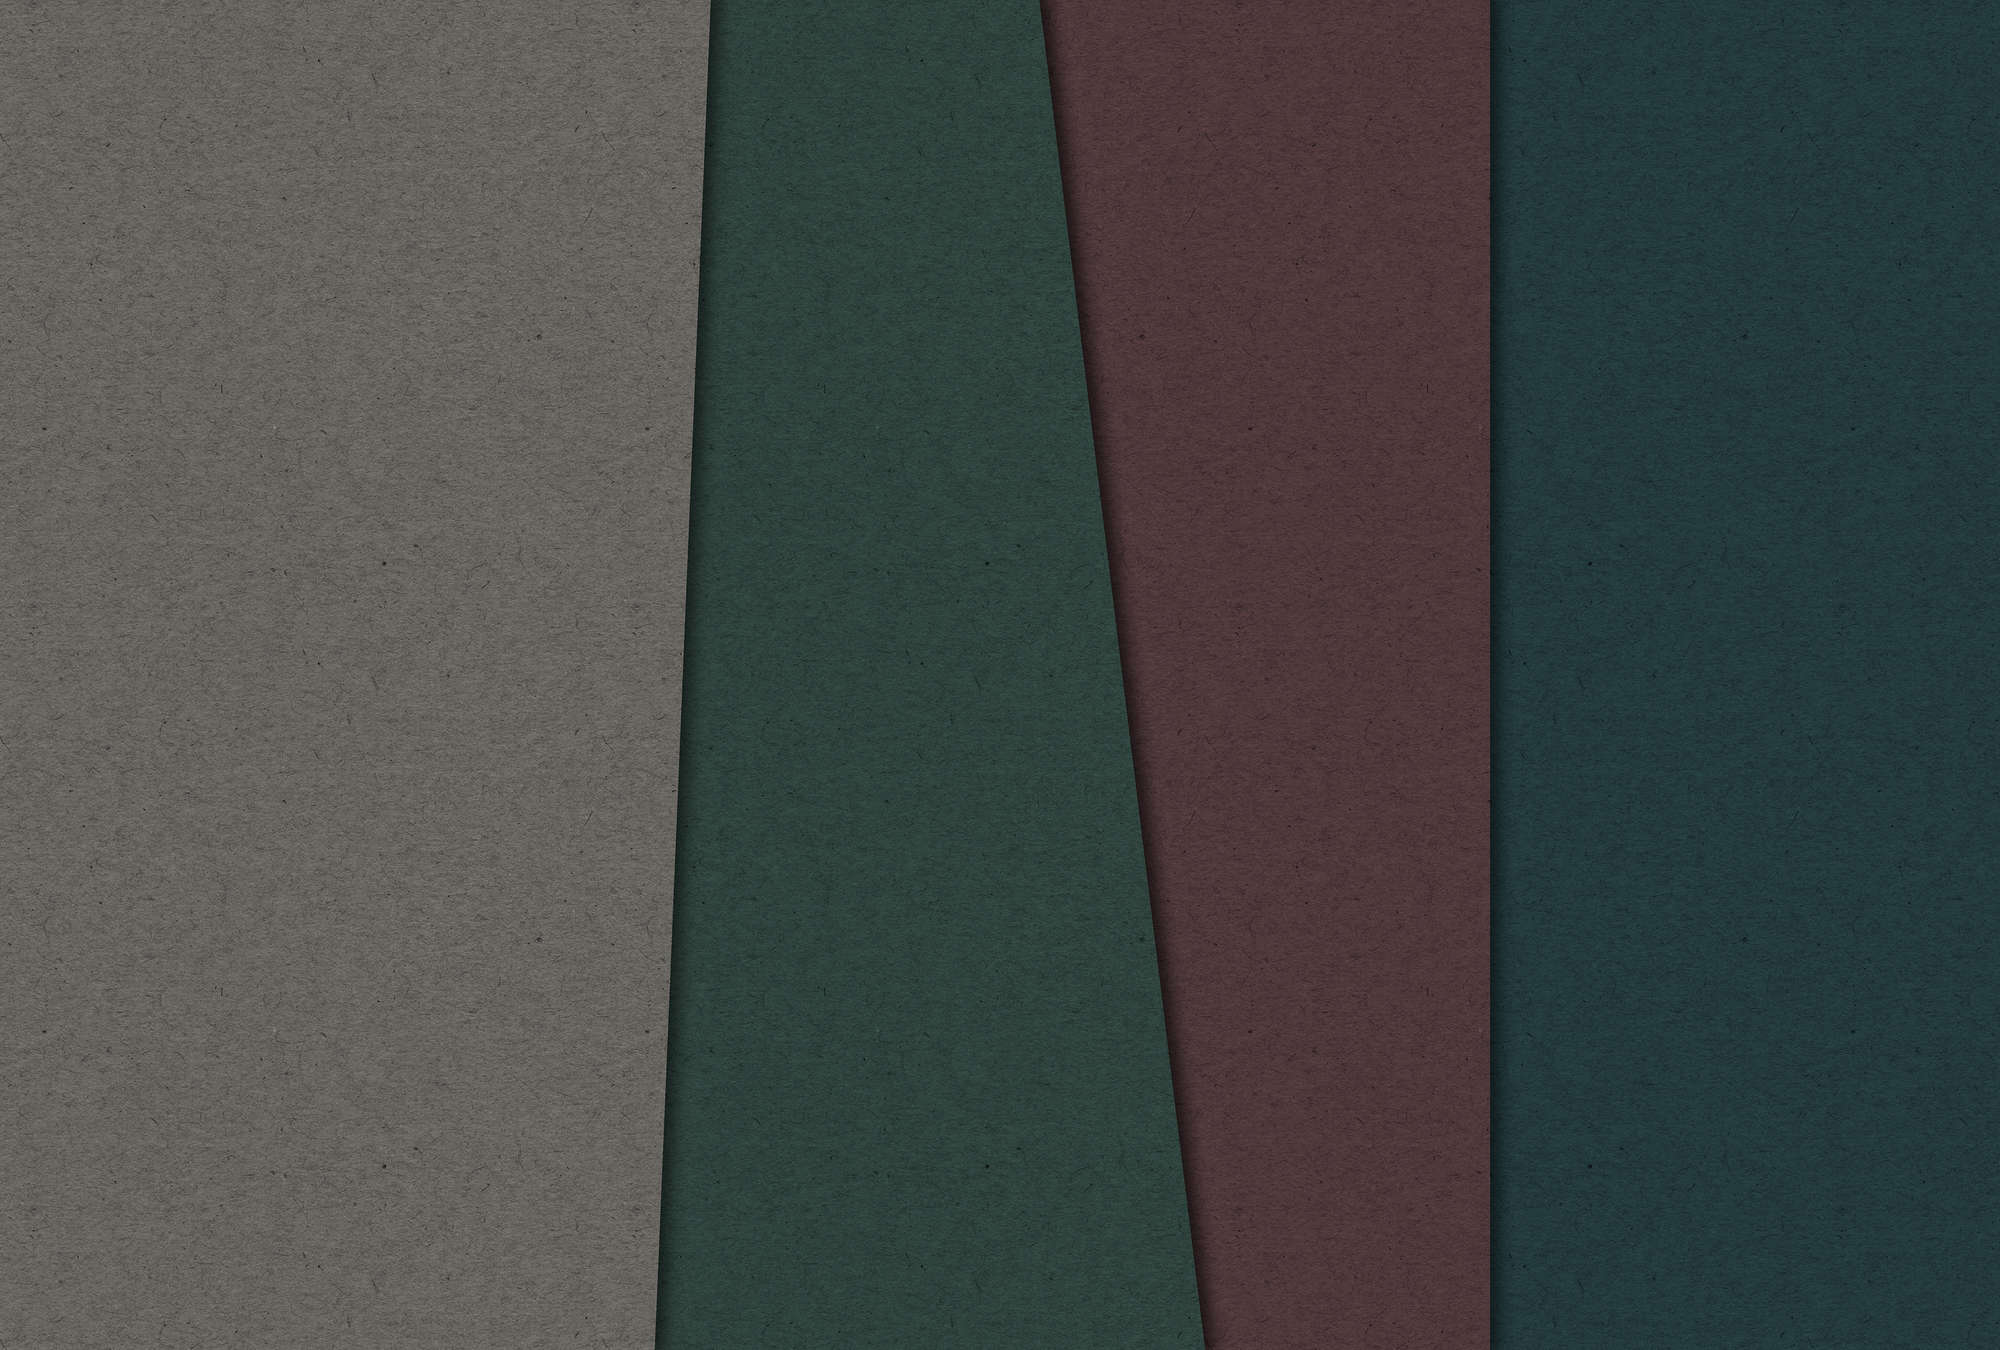             Layered Cardboard 1 - Fototapete mit dunklen Farbflächen in Pappe Struktur – Braun, Grün | Mattes Glattvlies
        